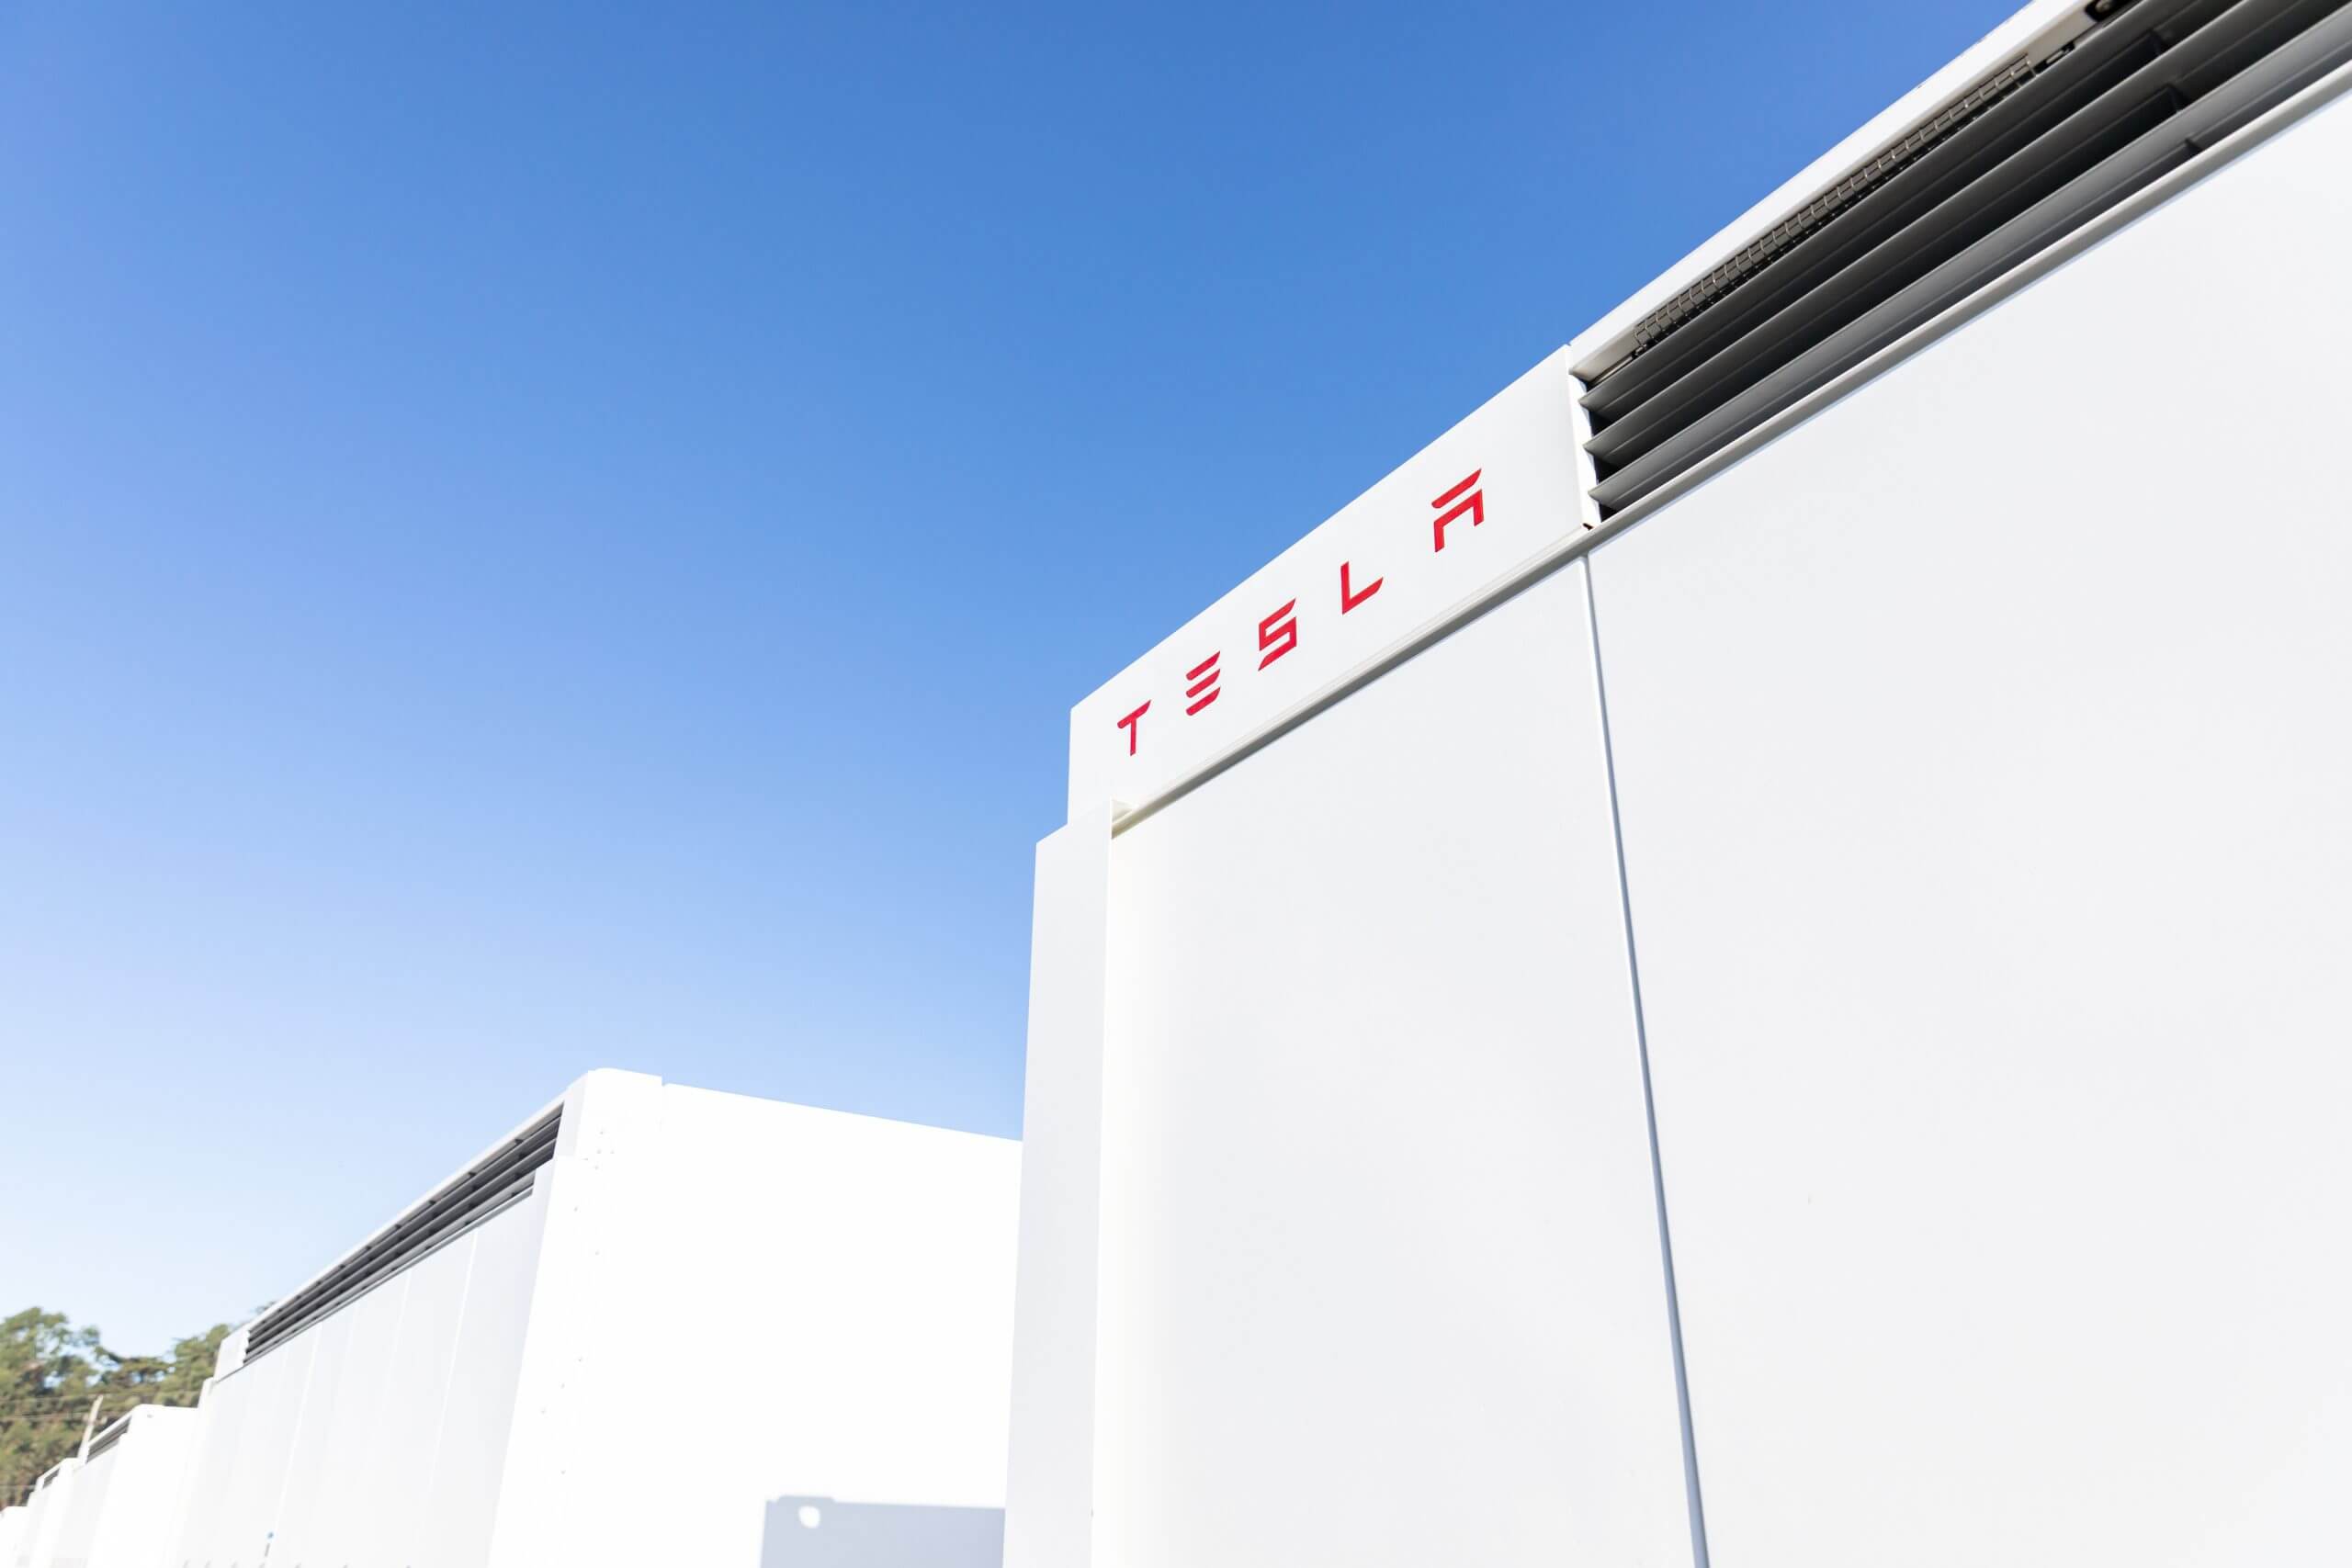 Tesla-Megapack-Brand in Australien löst Energiedebatte aus